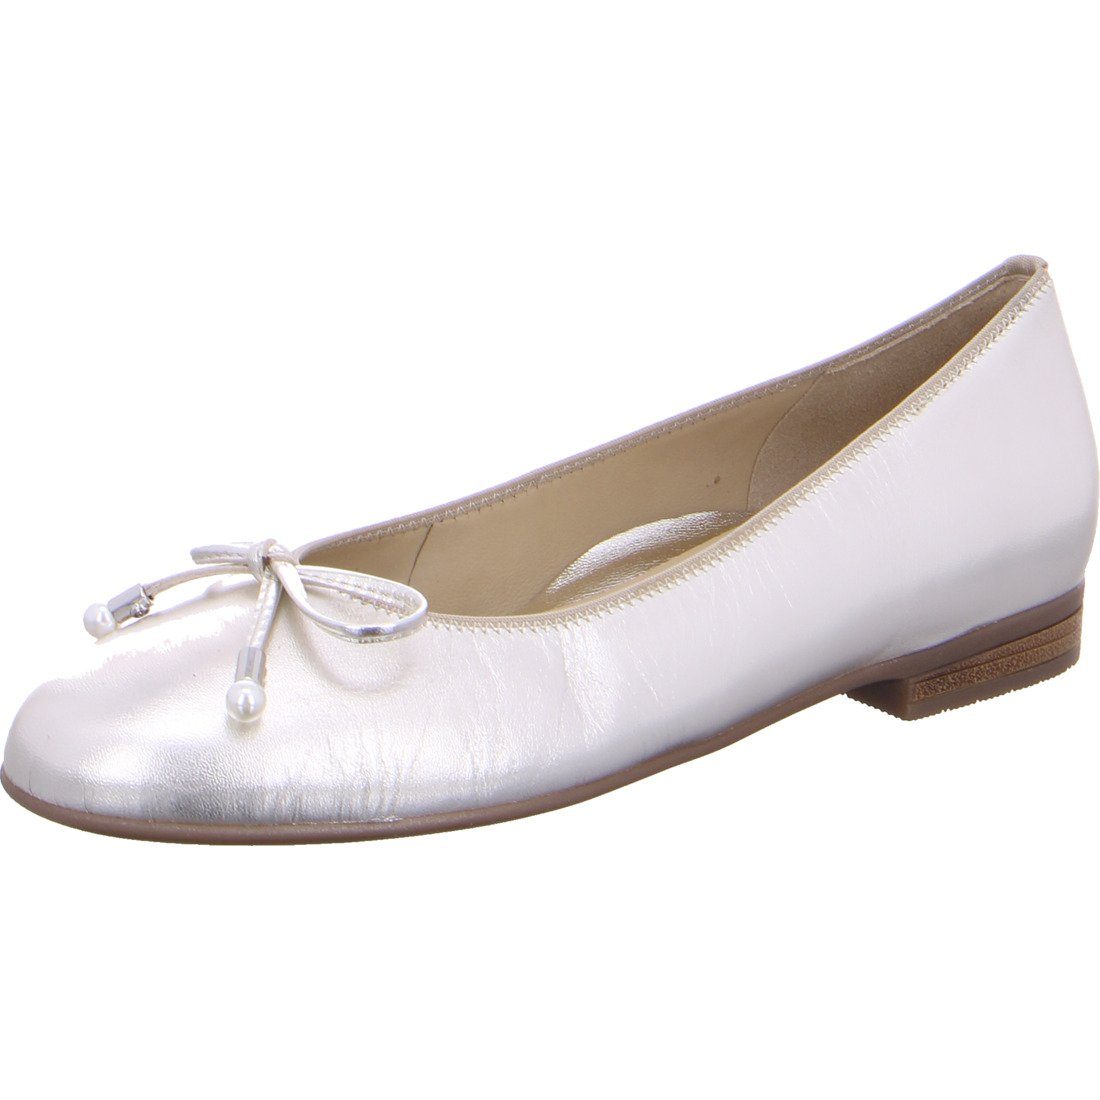 Ara Ara Schuhe, Ballerina Damen Rauleder - 048110 Ballerina beige Sardinia